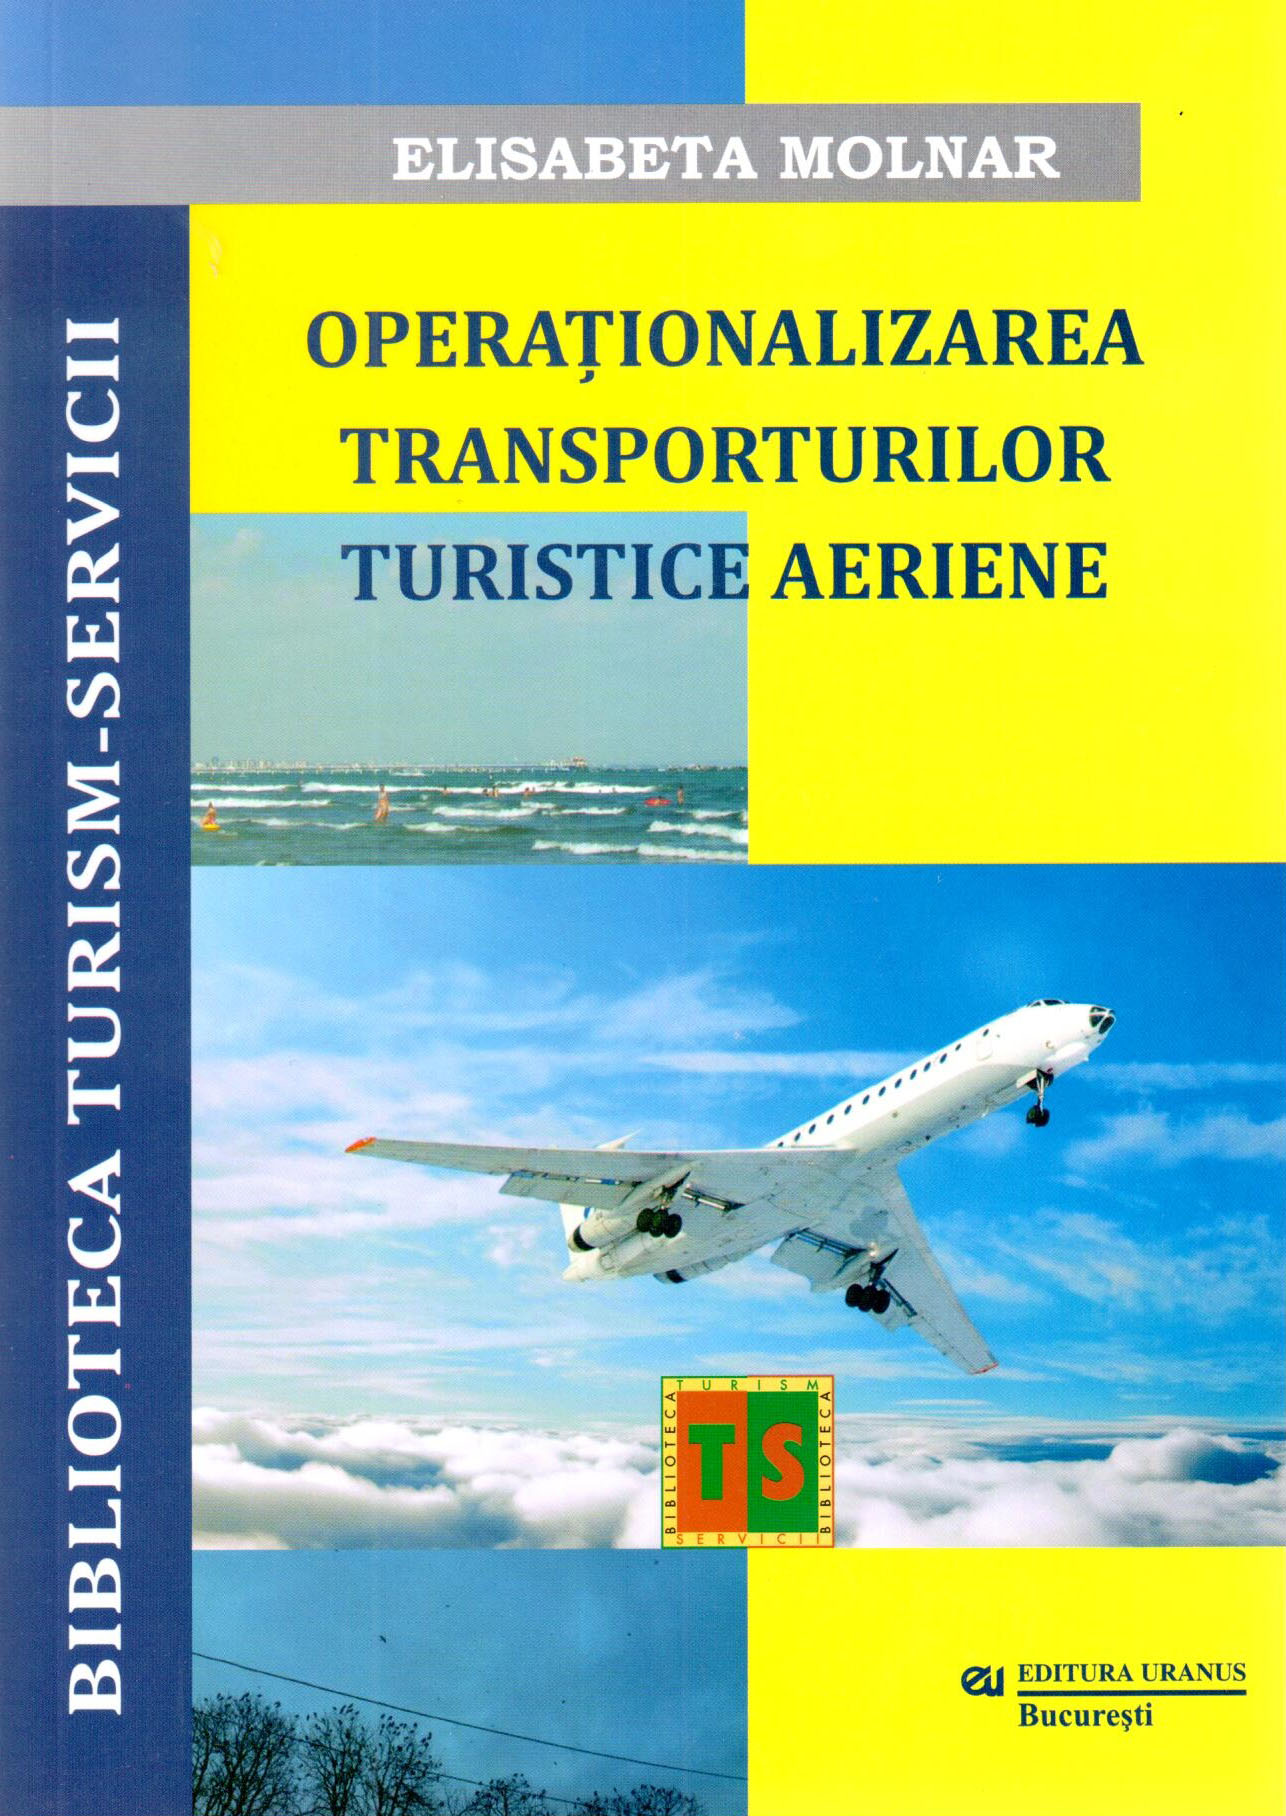 Operationalizarea Transporturilor Turistice Aeriene | Elisabeta Molnar Aeriene imagine 2022